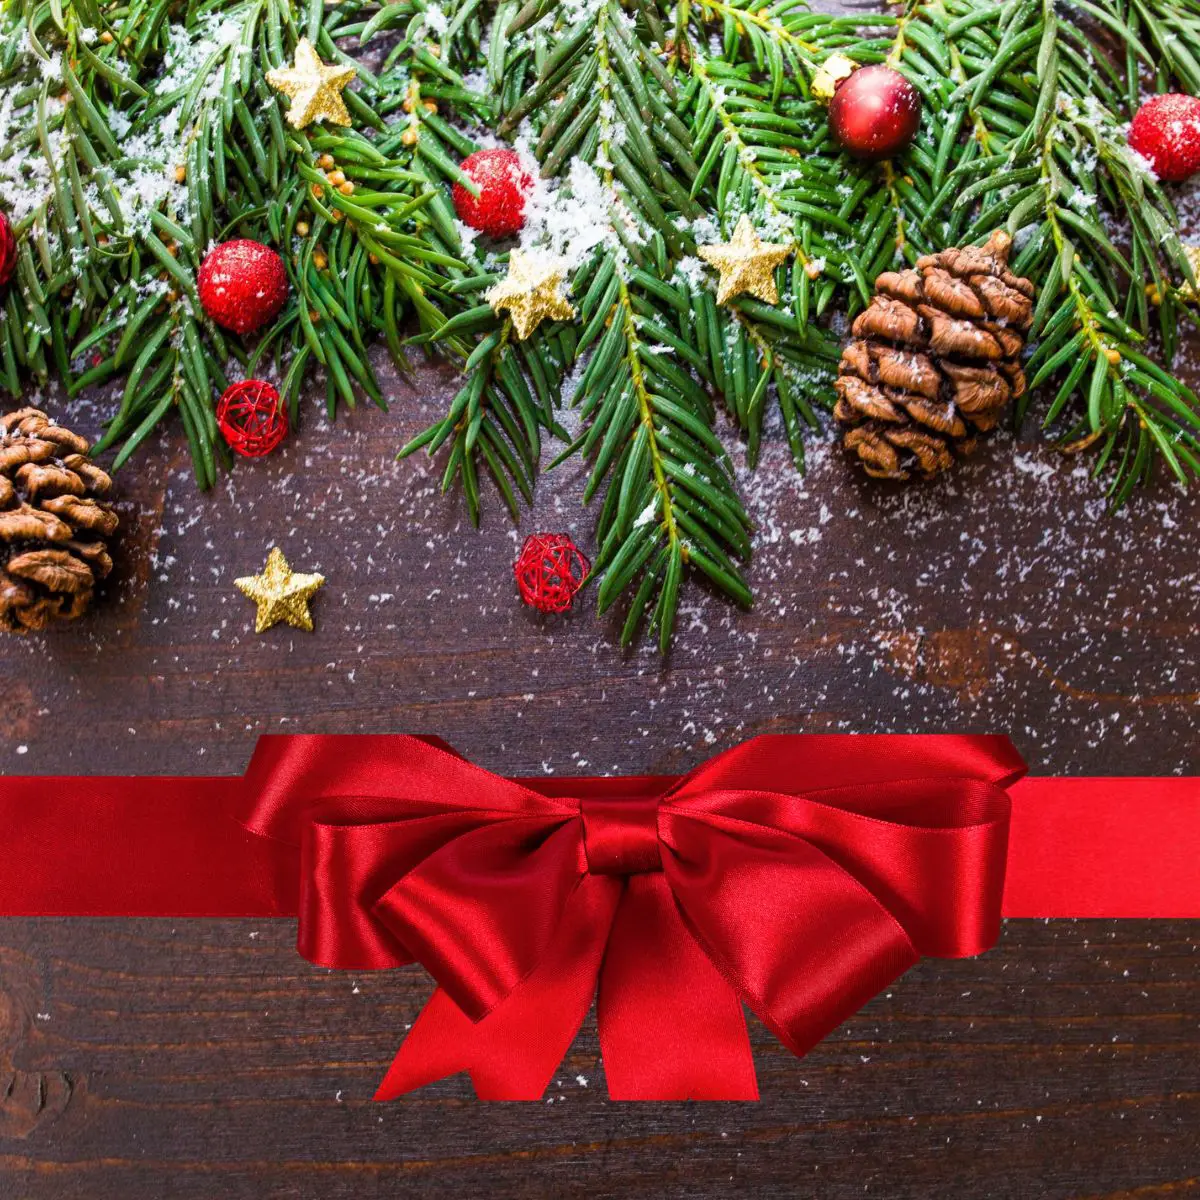 Ausmalbilder Weihnachten kostenlos drucken. Mit Tannenzweigen und Tannenzapfen dekorierte Holzplatte. Eine rote Schleife liegt ebenfalls auf der dunkelbraunen Holzplatte.